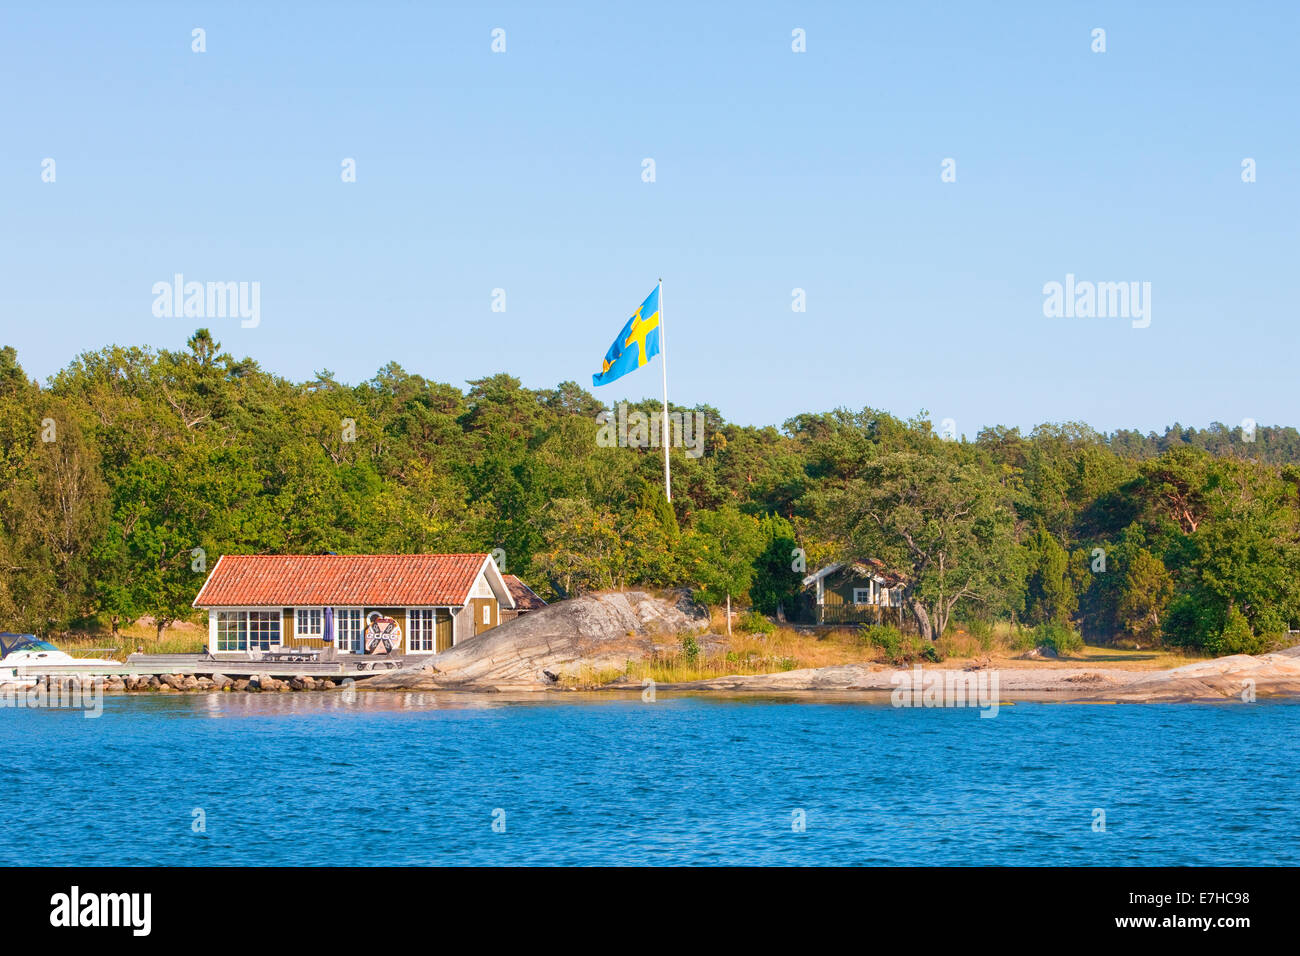 Suède, Stockholm - Maison sur l'île en archipel avec drapeau suédois sur poteau. Banque D'Images